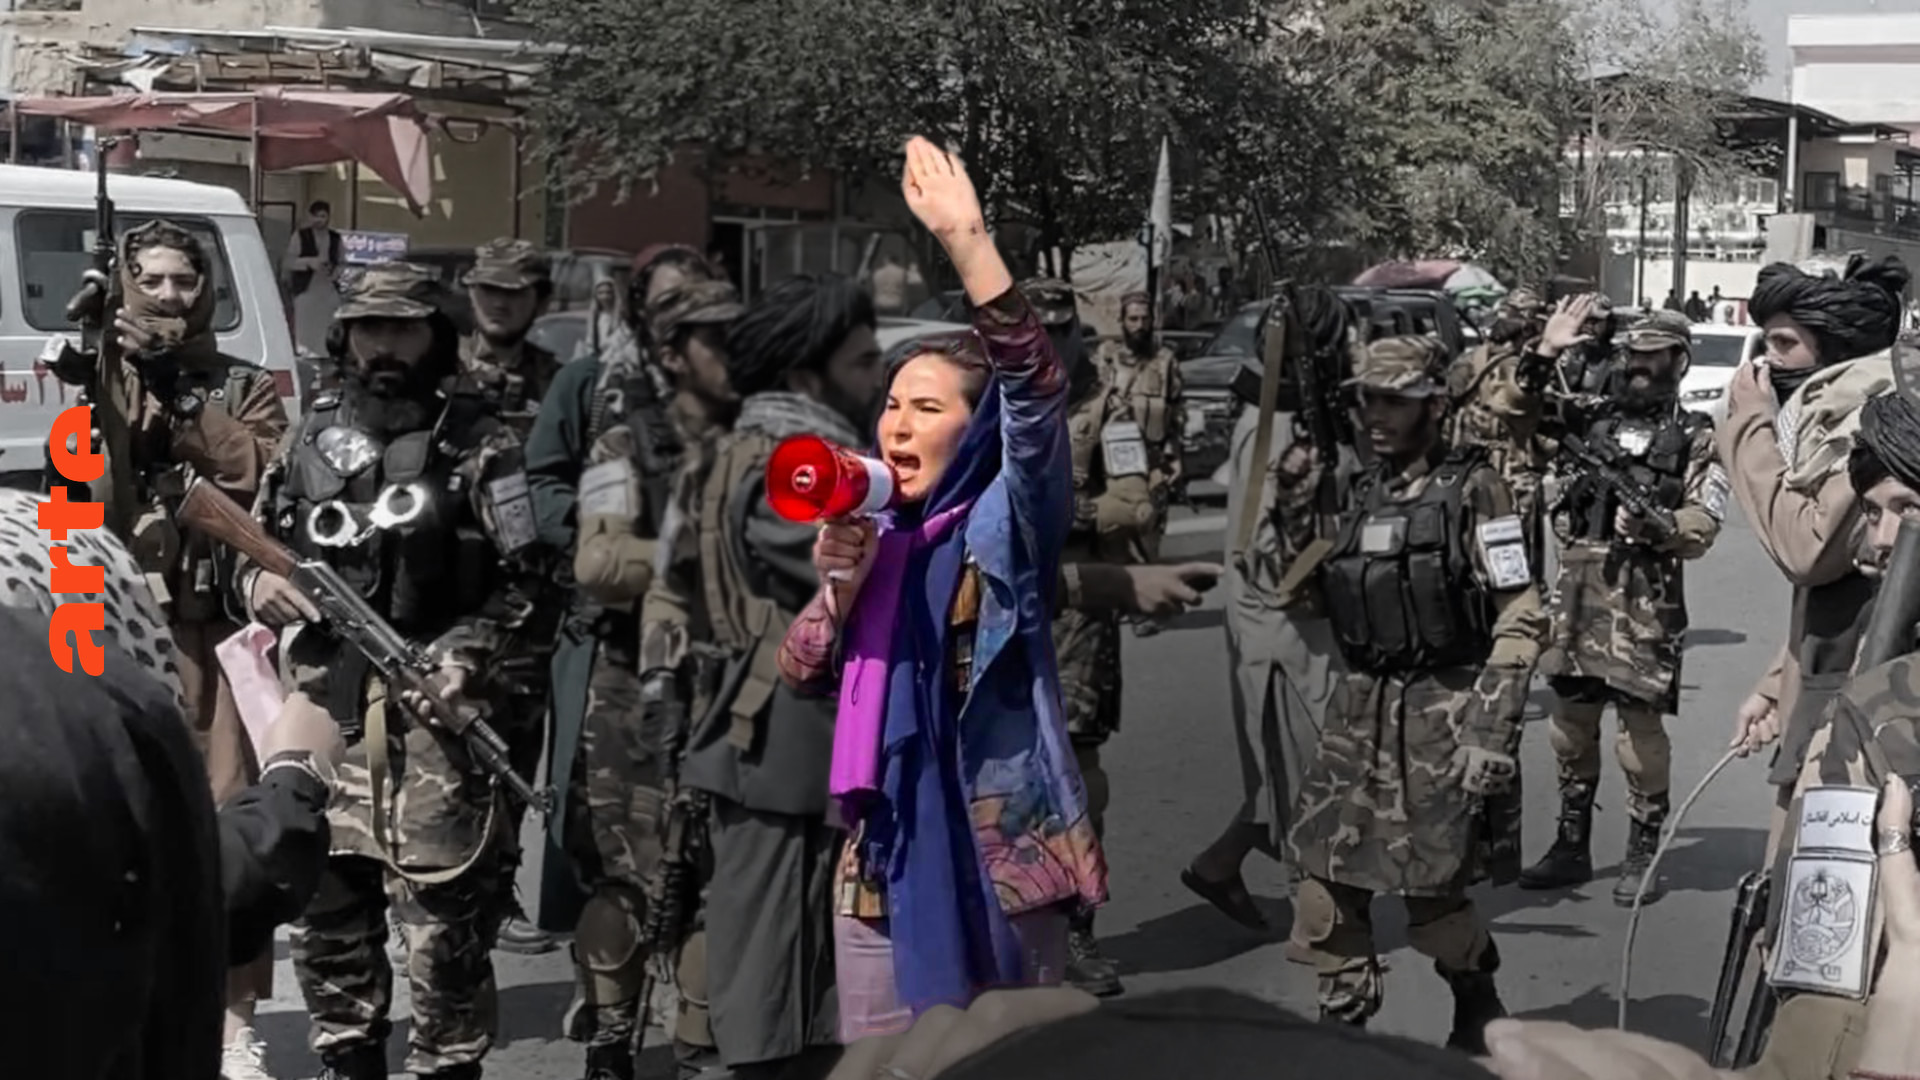 Afghanistan: Wir geben nicht auf